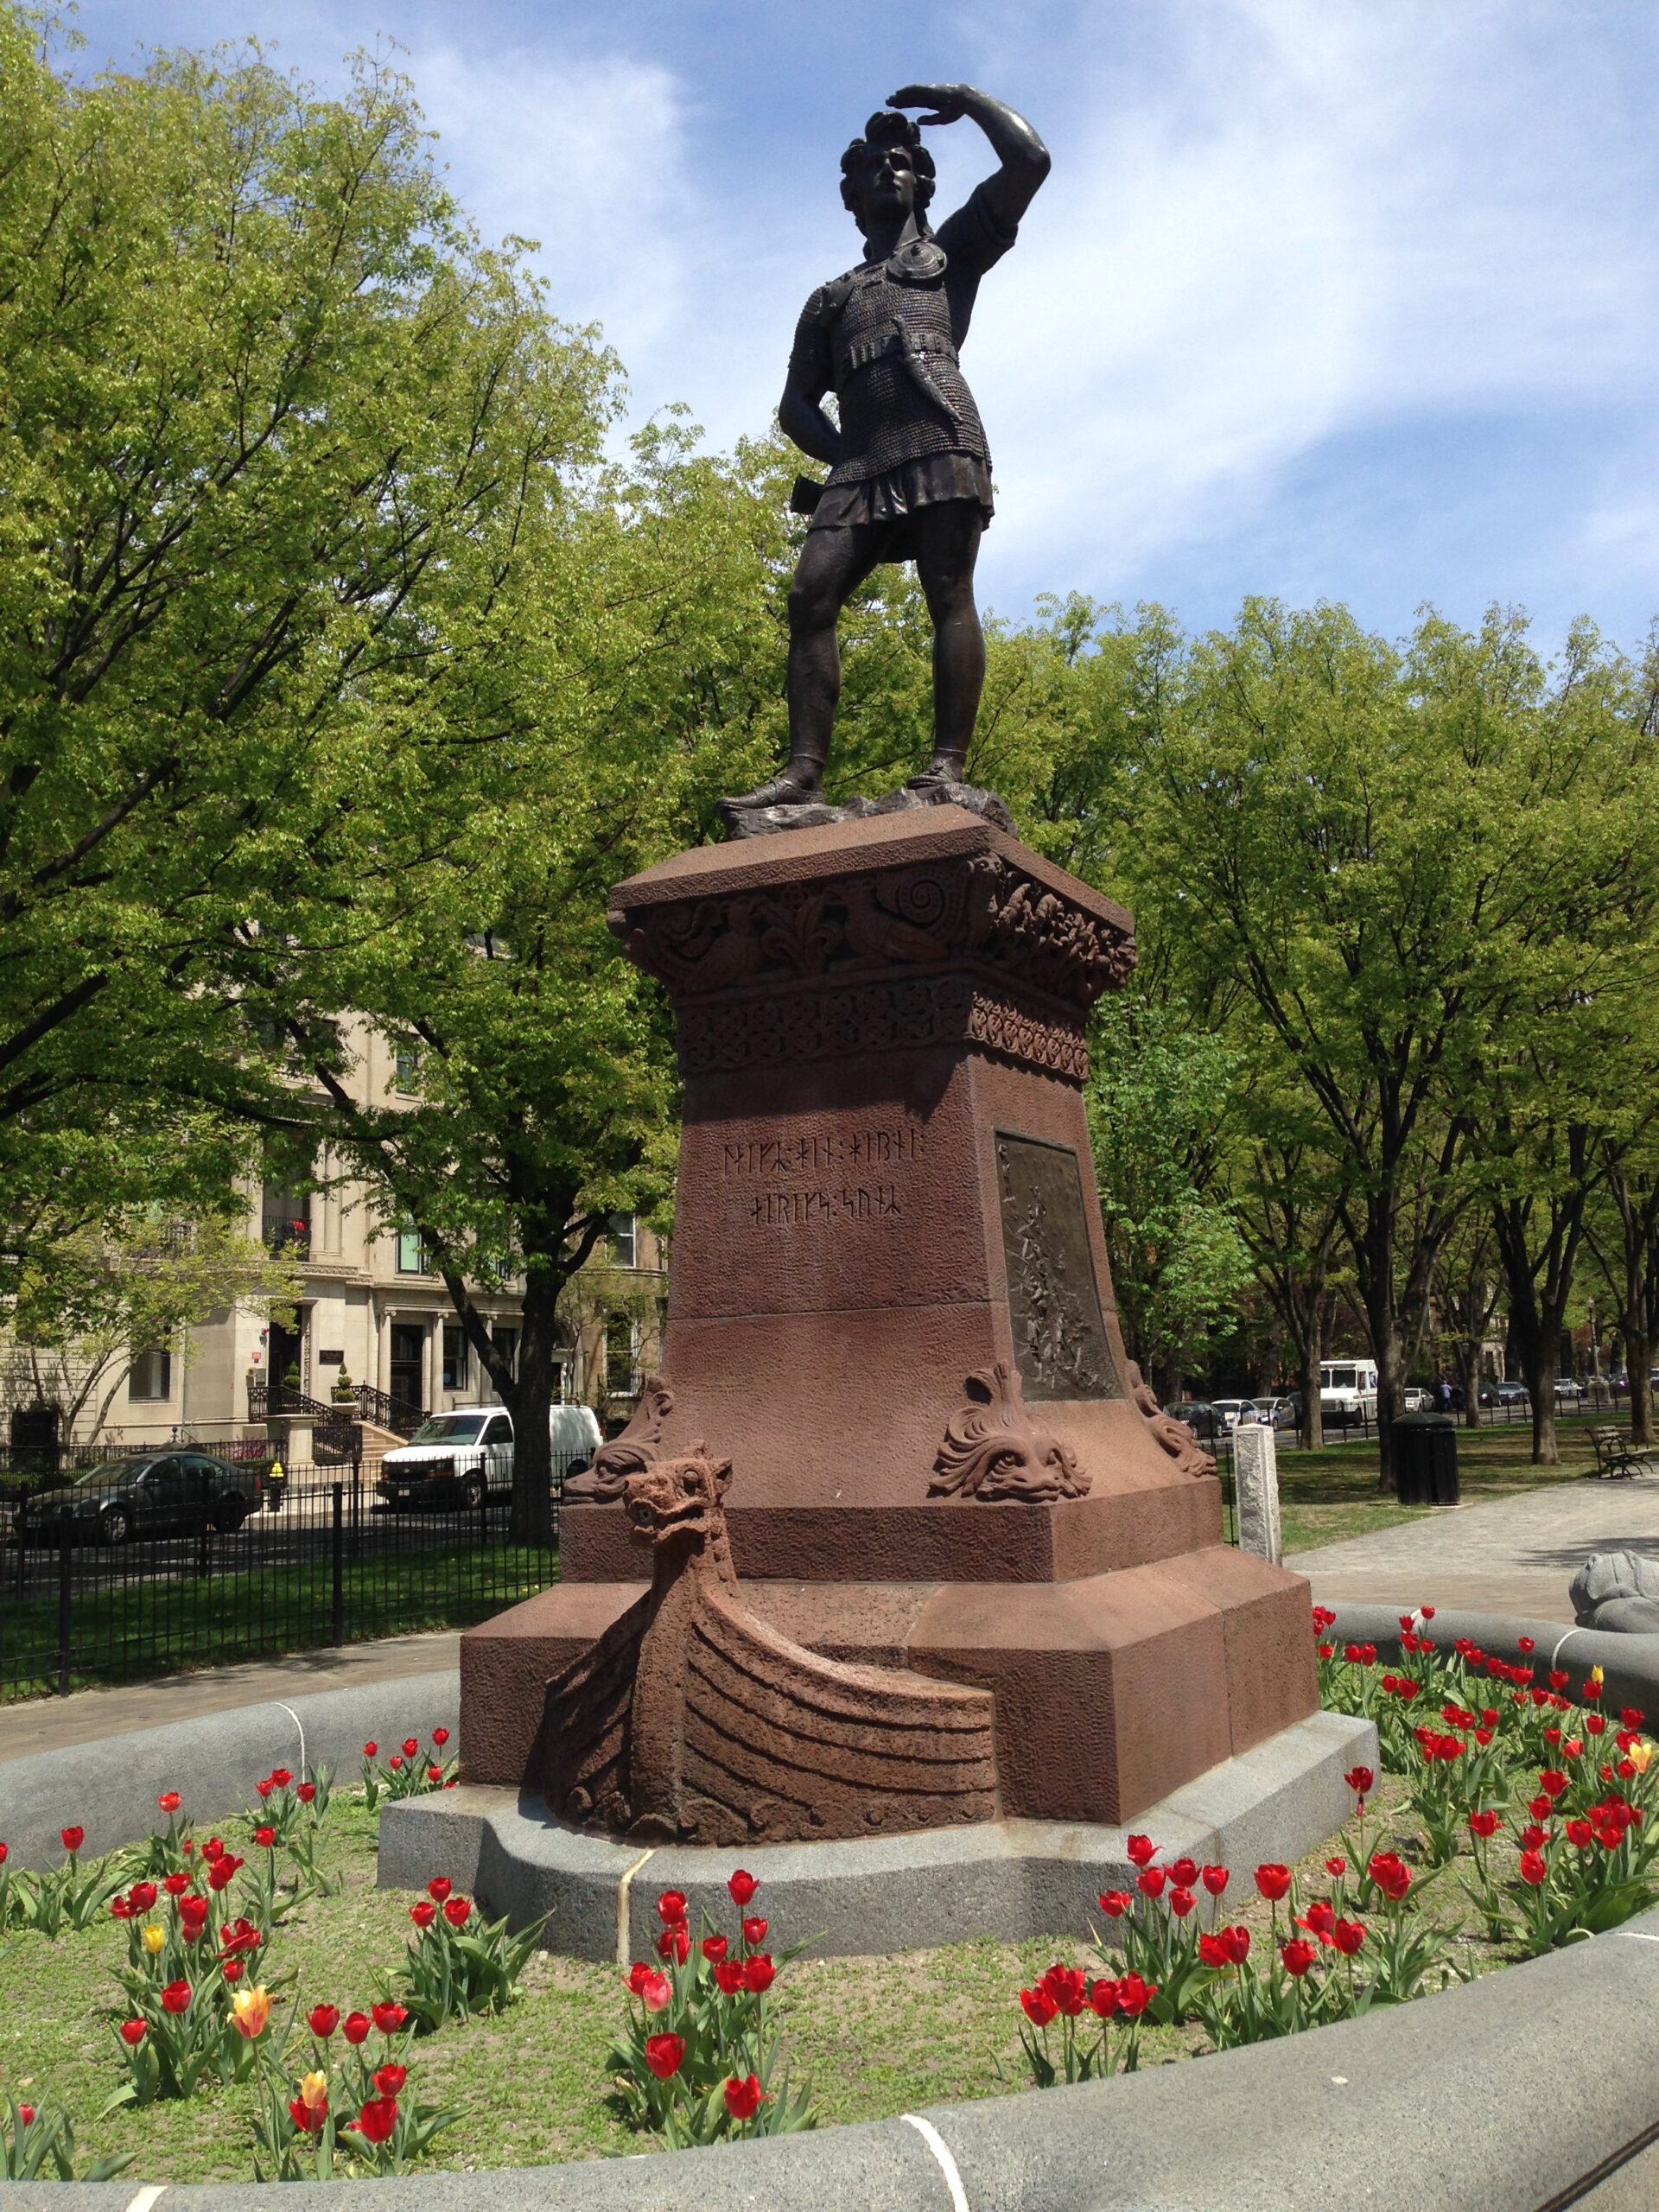 Leif Erikson monument in Boston